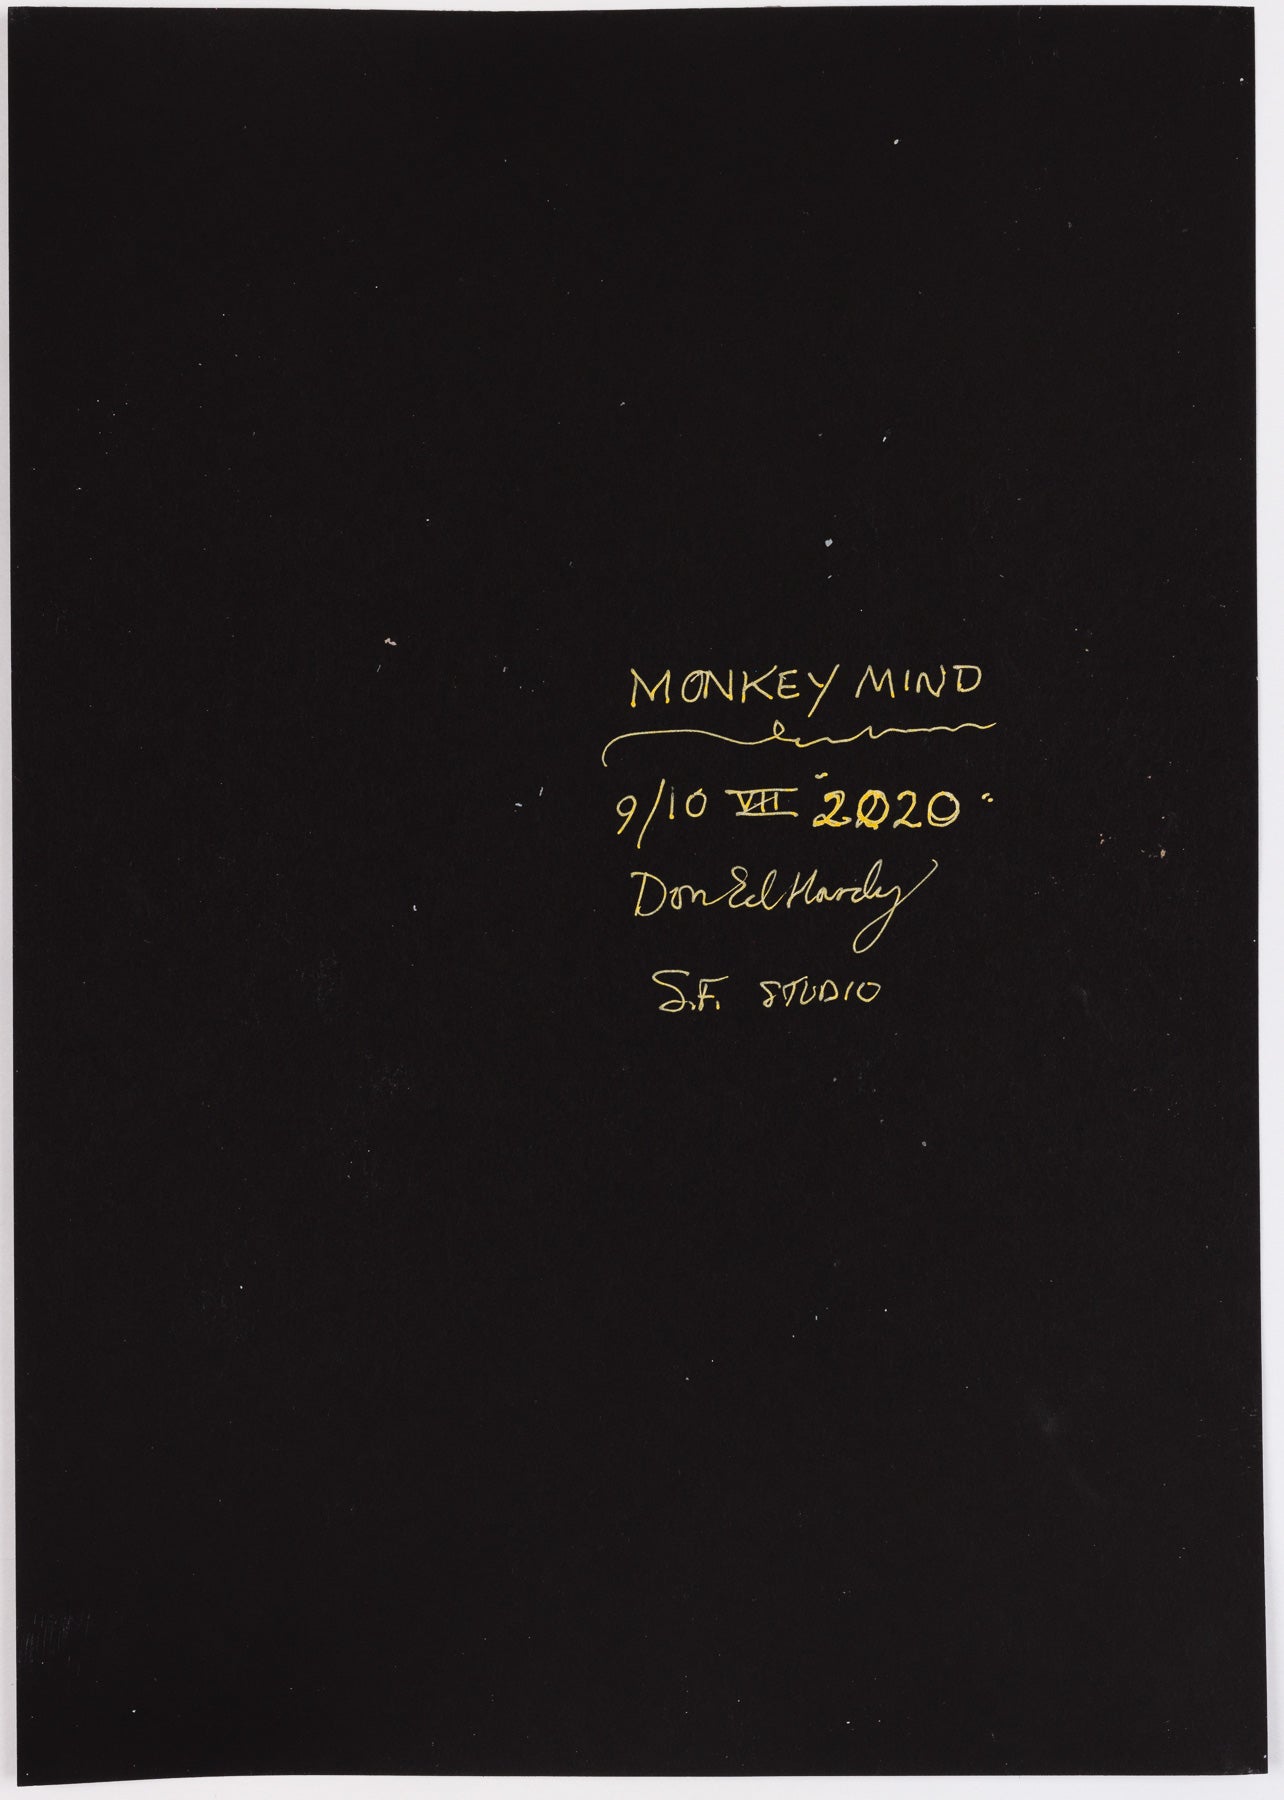 Don Ed Hardy - Monkey Mind (2020)